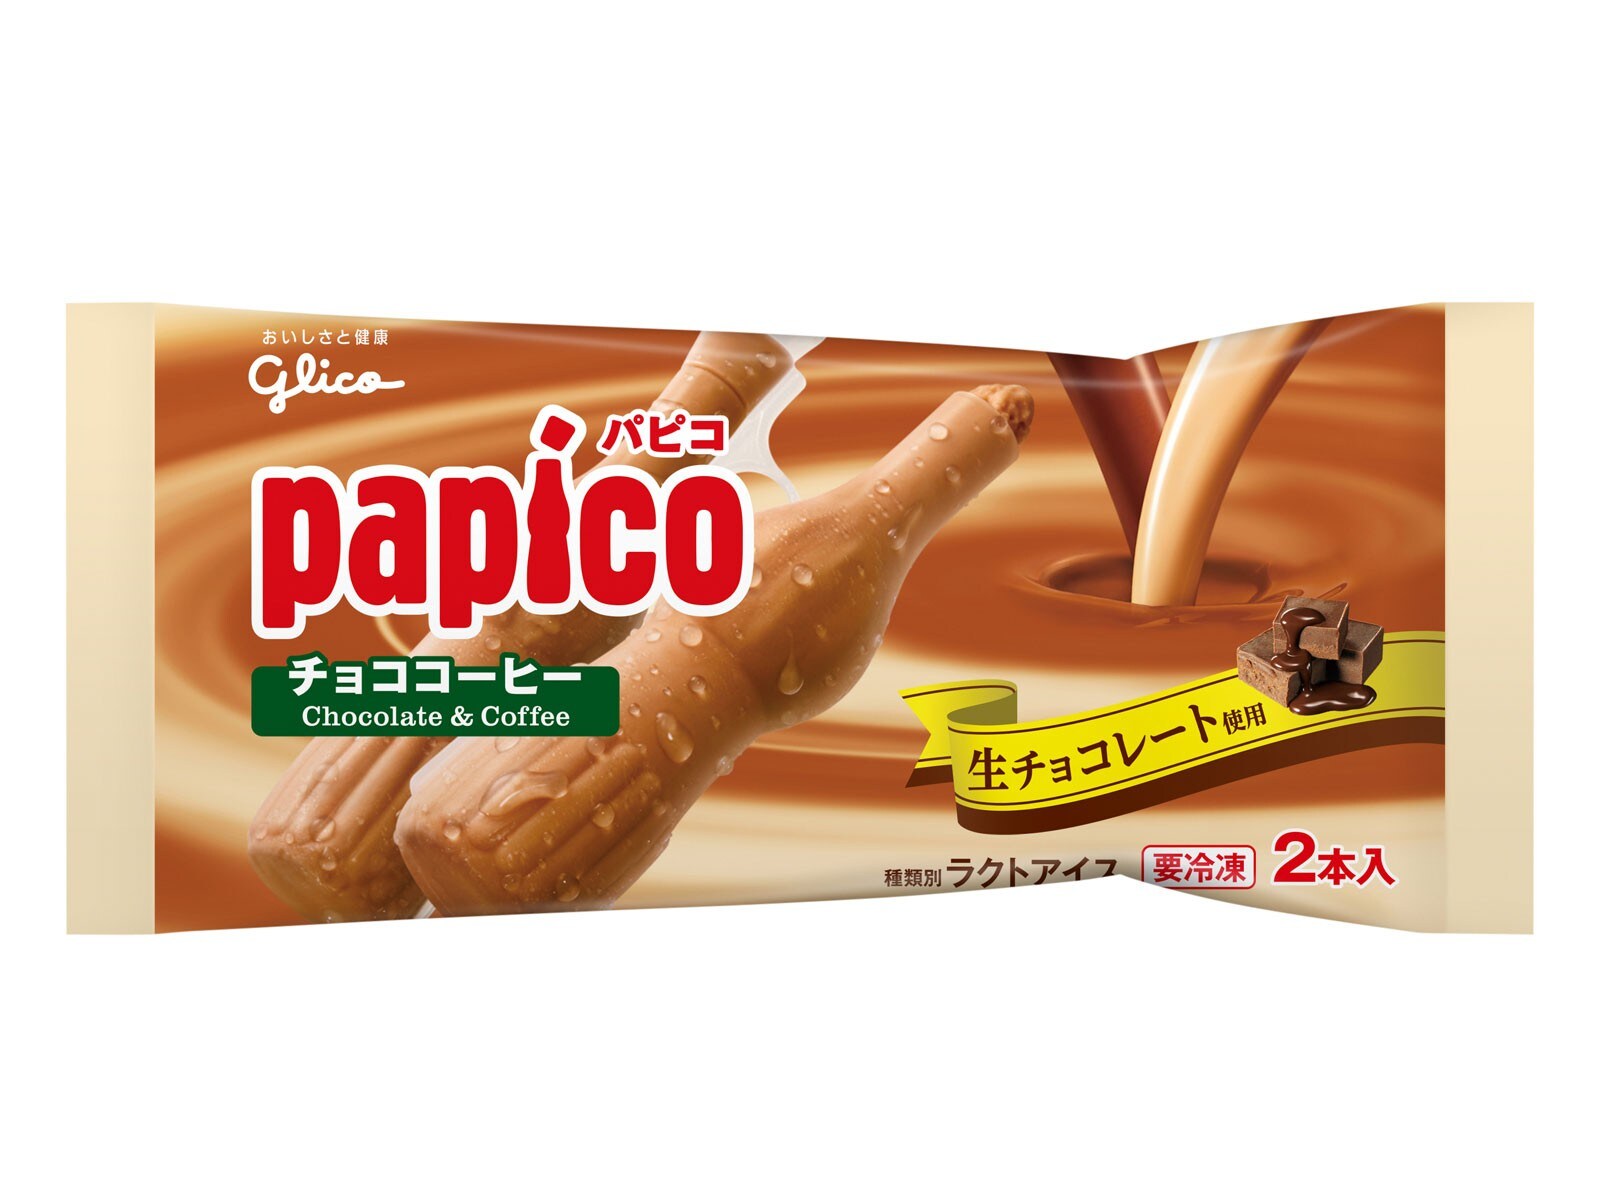 「パピコ」は昔と今で味が違う!?「違いの分かる人」になれるパピコの豆知識